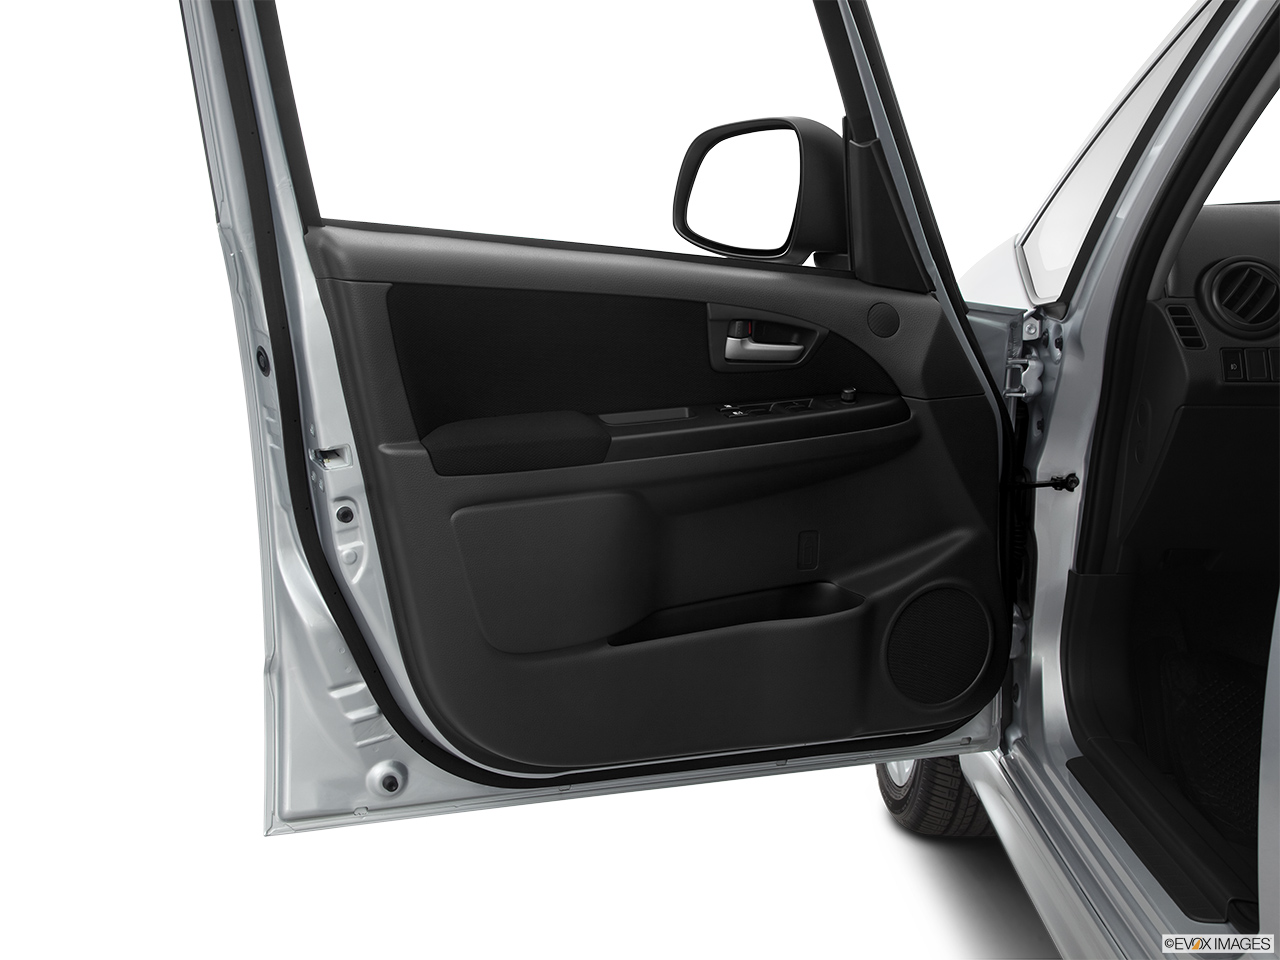 2011 Suzuki SX4 Sportback Technology Inside of driver's side open door, window open. 